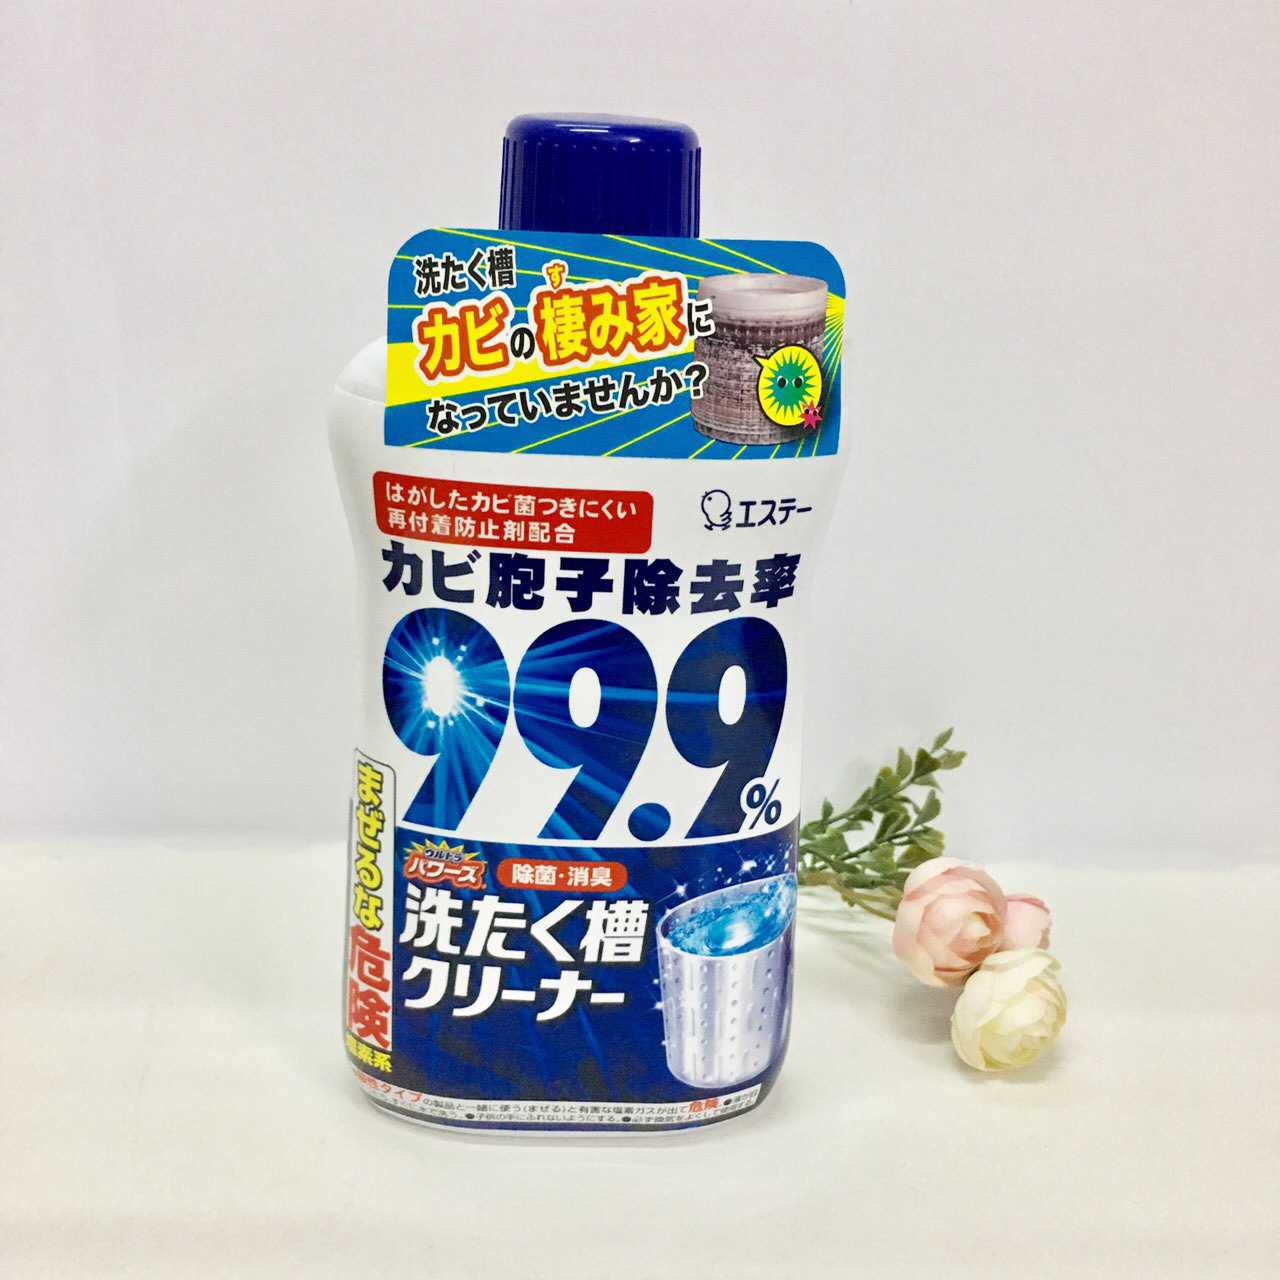 Chai tẩy lồng giặt siêu sạch Ultra Powers cao cấp 550g Nhật Bản